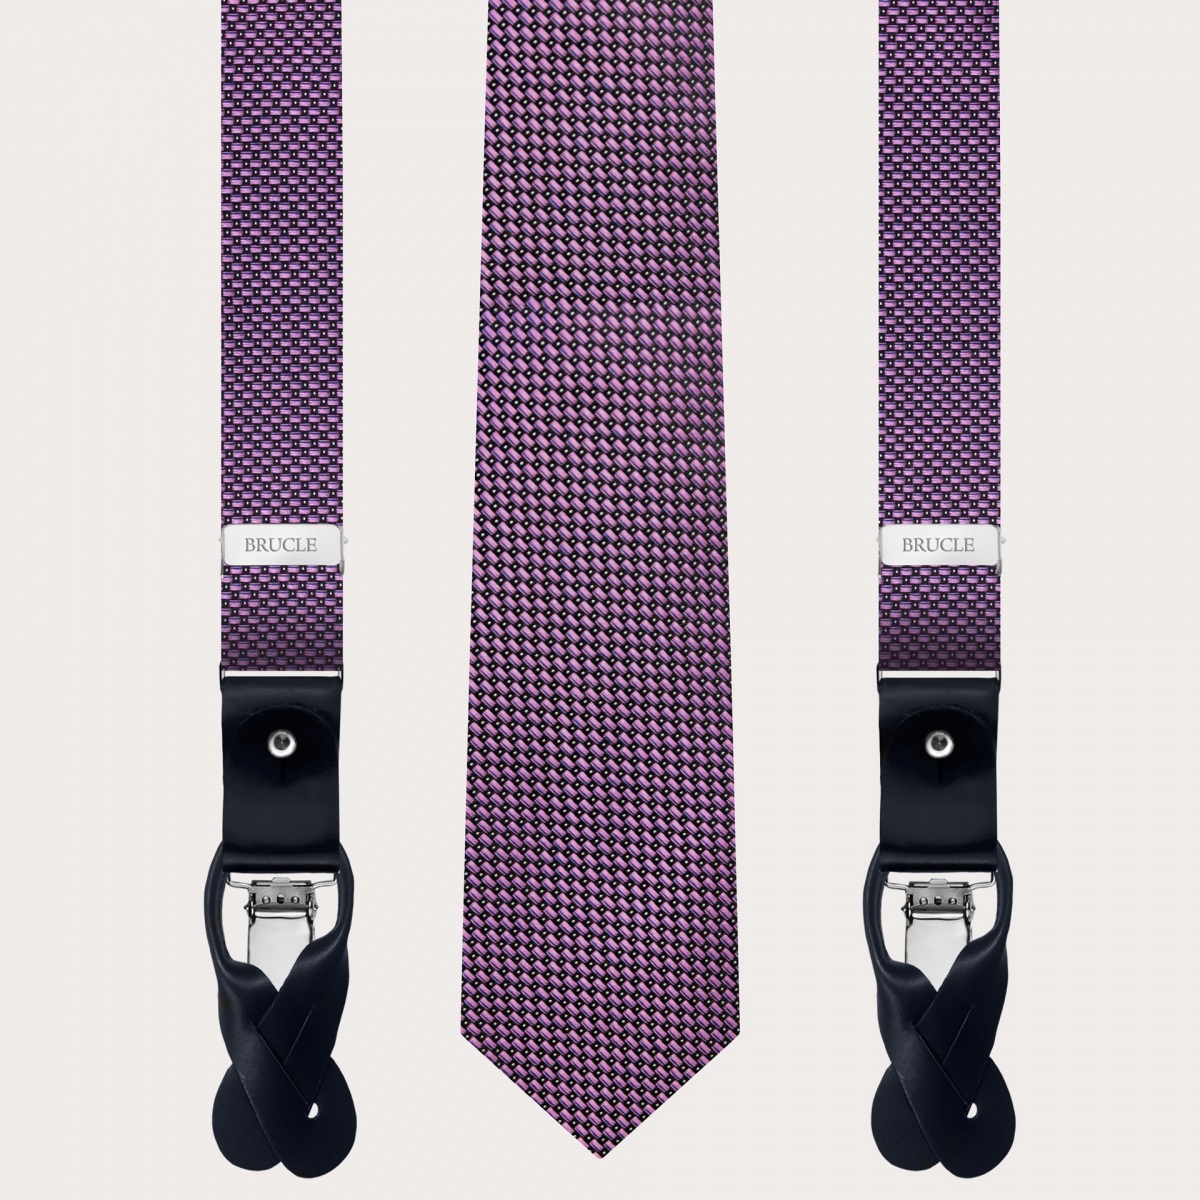 Ensemble coordonné bretelles fines et cravate en soie jacquard, rose à pois